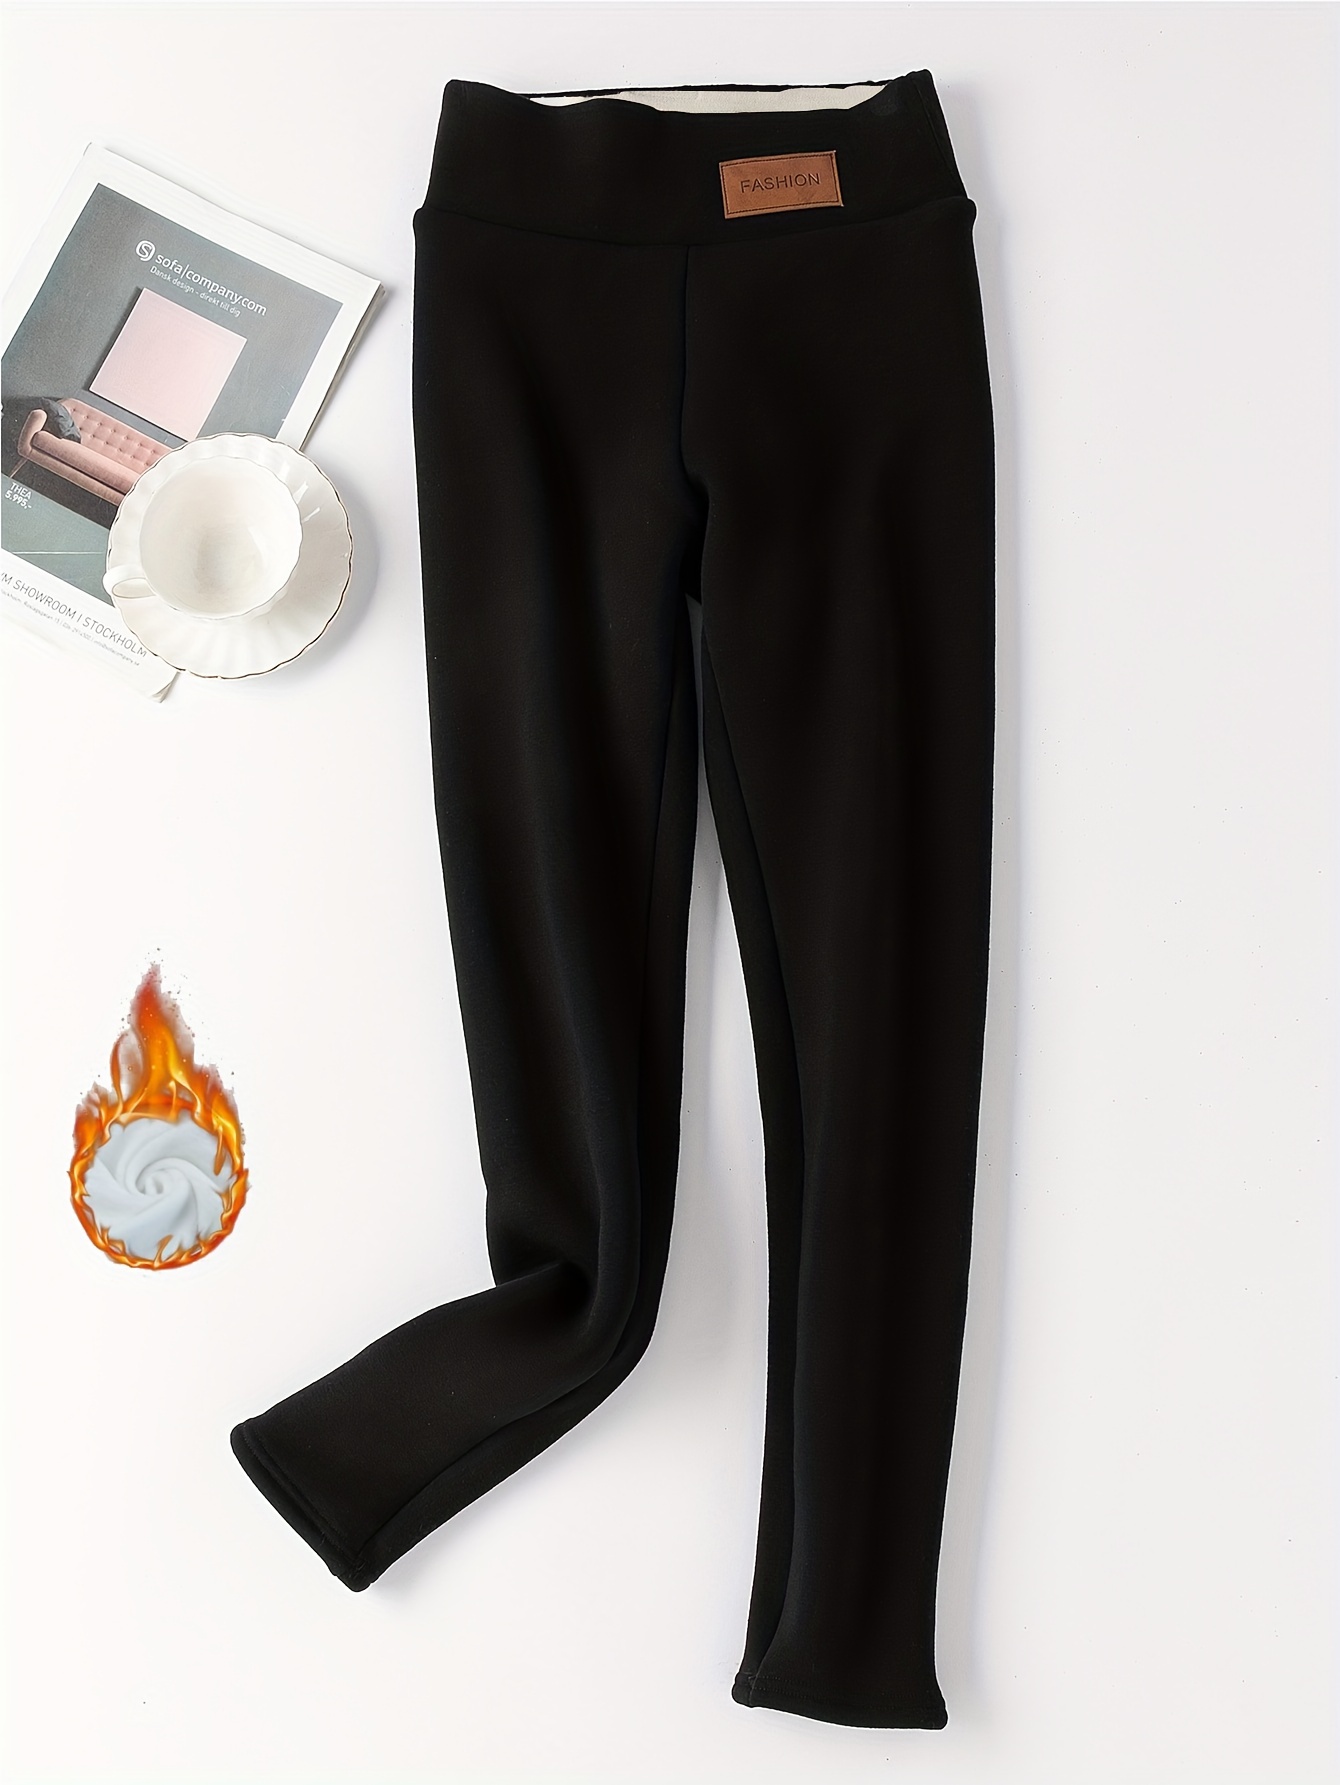 Pantalones térmicos con forro de felpa, calzas elásticas suaves y cómodas  para la temporada, lencería y pijamas para mujer